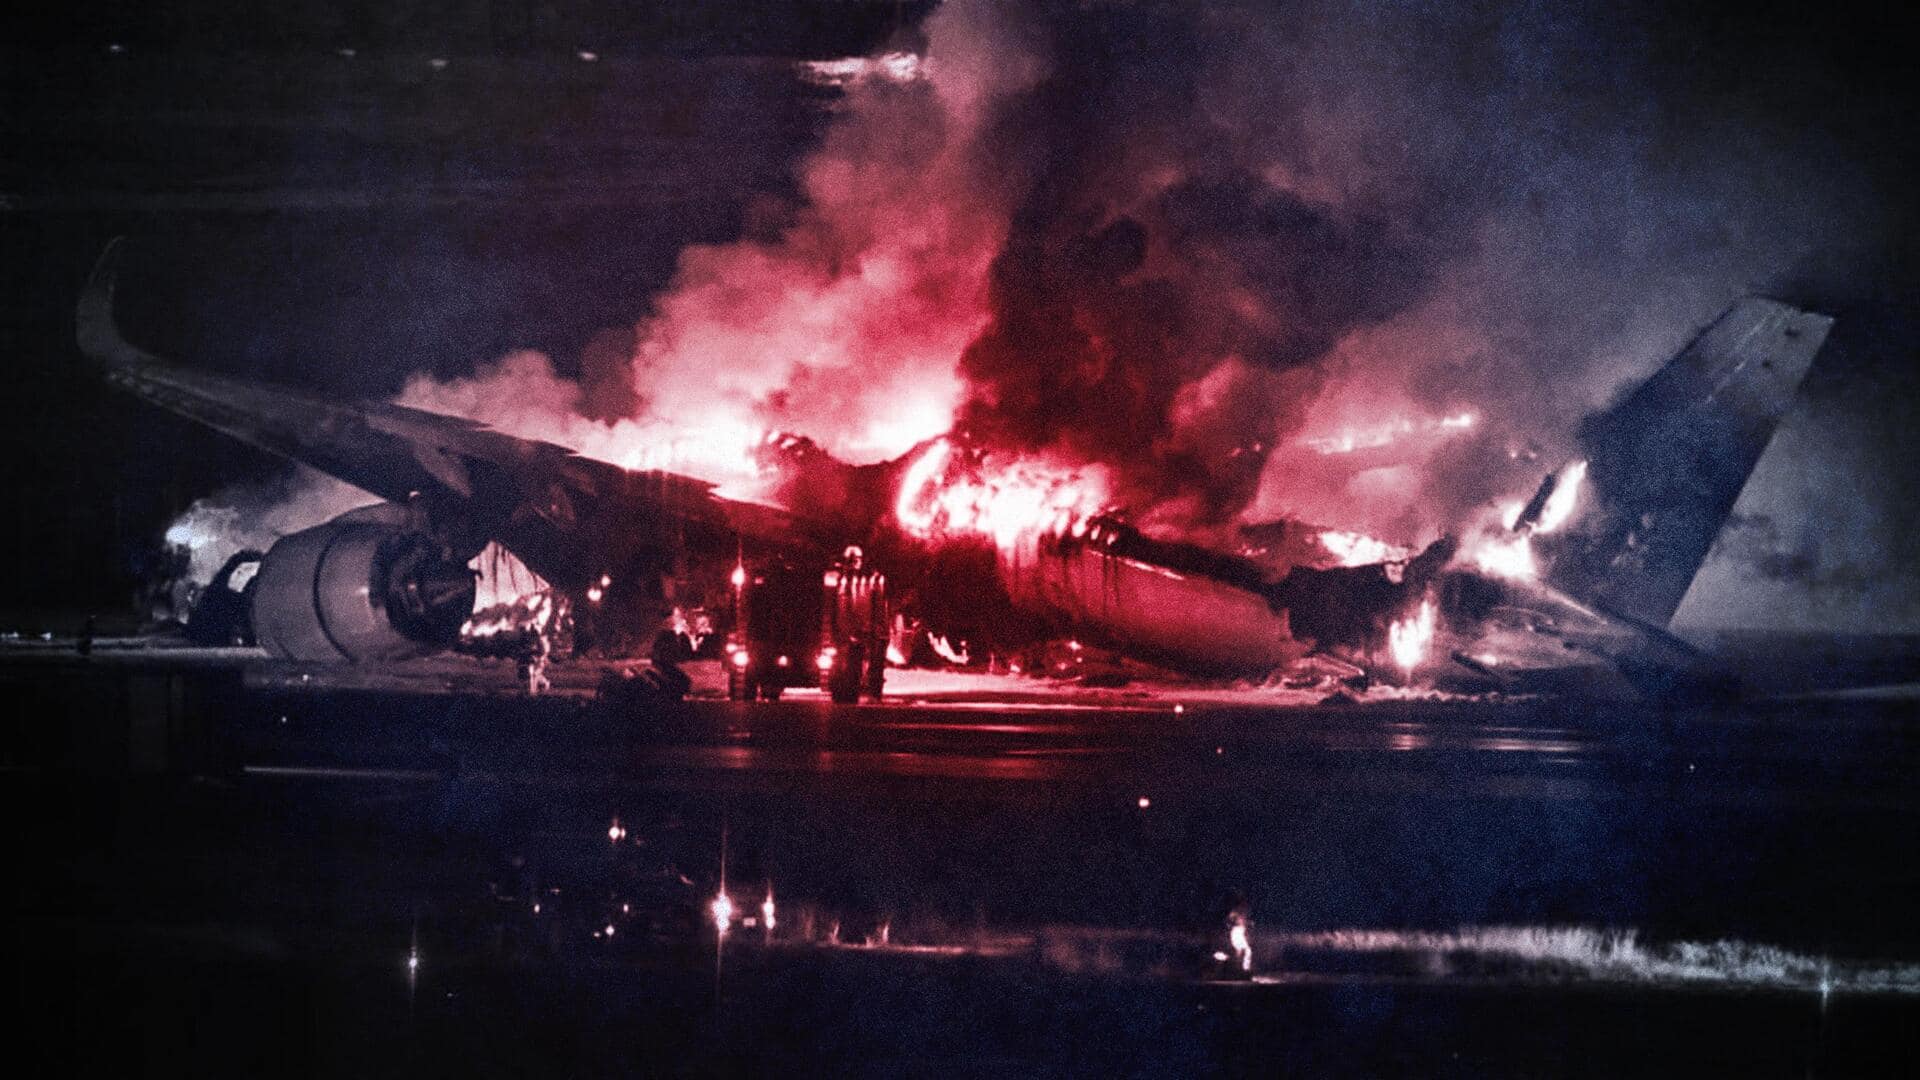 जापान: दूसरे विमान से टकराकर जलकर खाक हुआ यात्री विमान, चमत्कारिक तरीके से बचे 367 यात्री